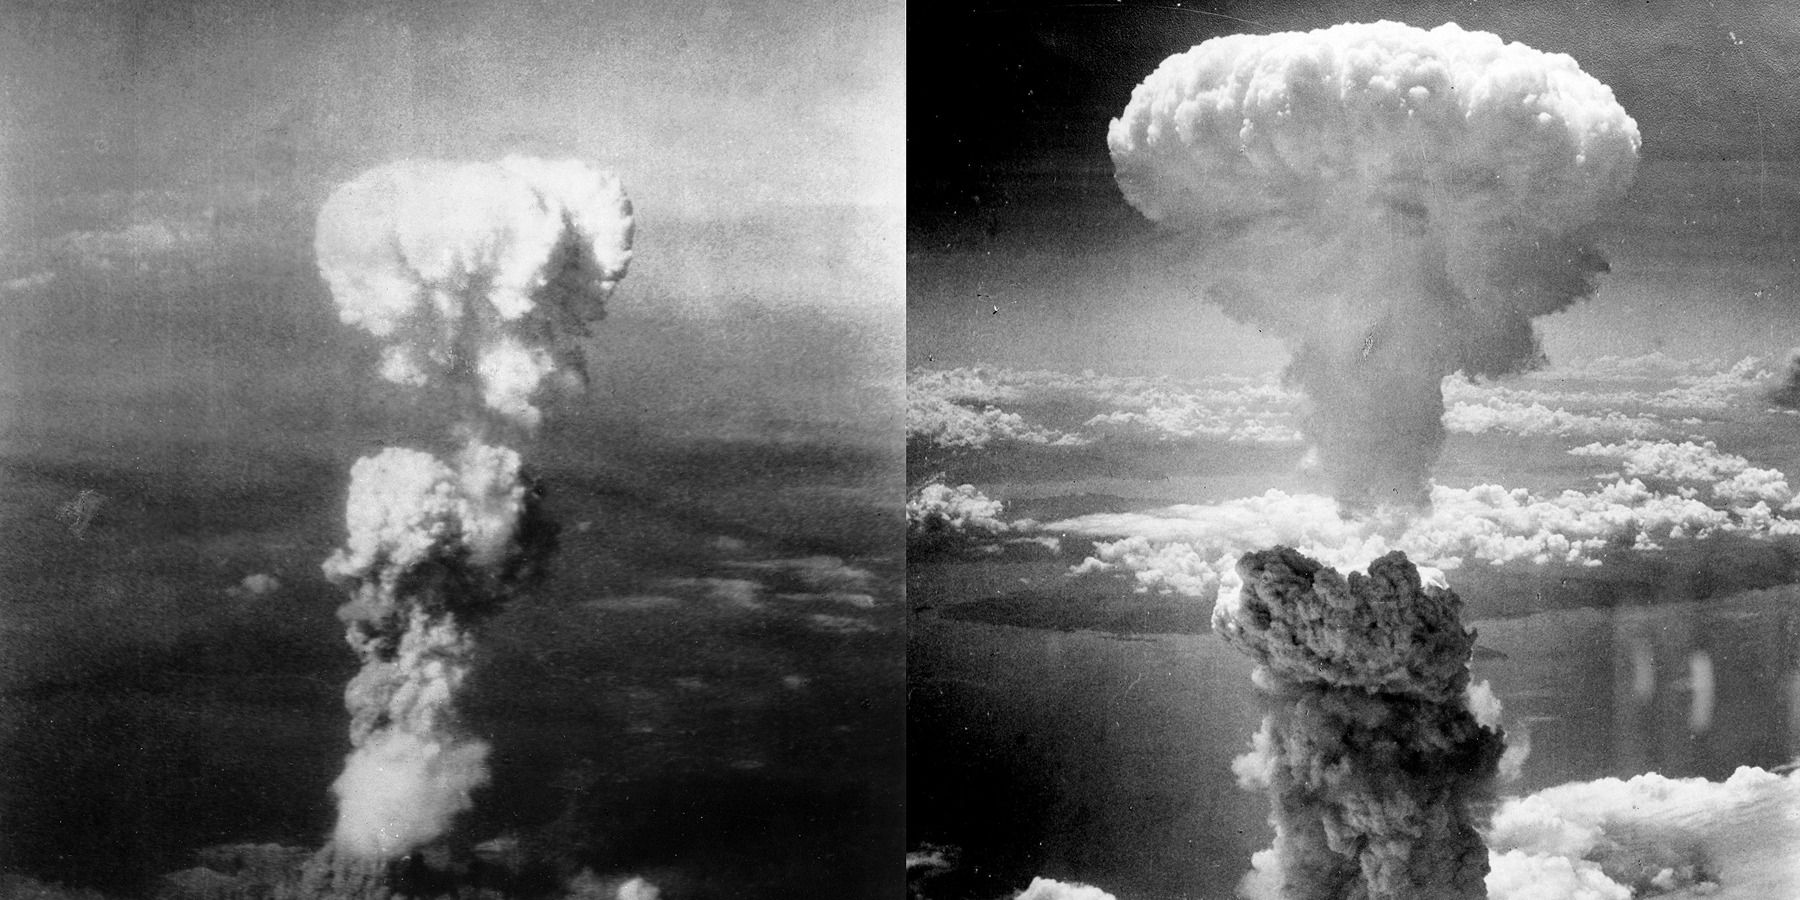 hiroshima-nagasaki bombing